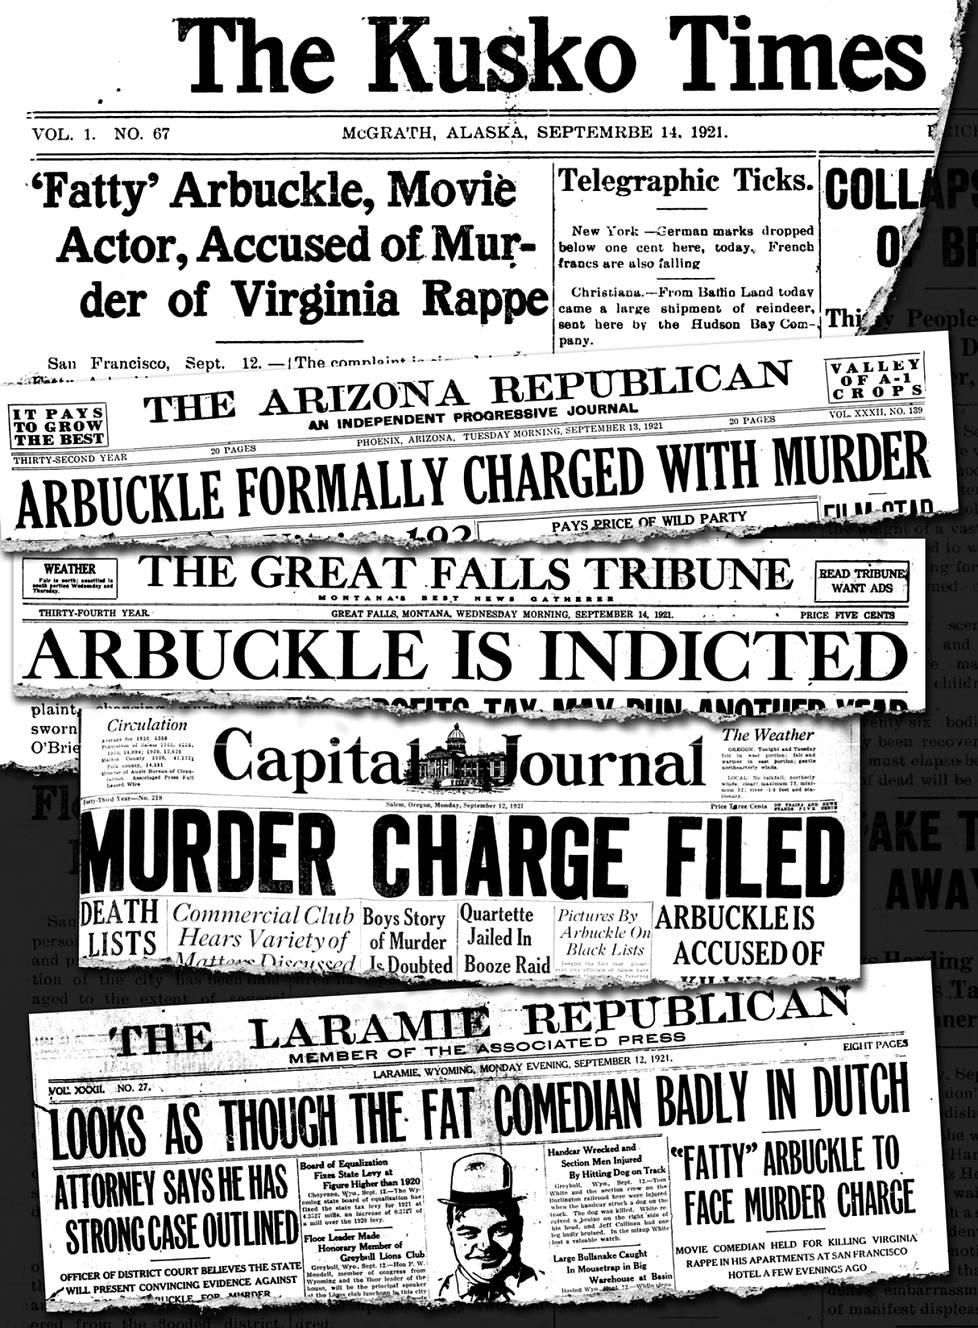 Arbucklen syytteet nousivat etusivun uutiseksi ympäri Yhdysvaltoja. Lehtileikkeitä 12.-14. syyskuuta 1921: The Kusko Times (Alaska), The Arizona Repubican, The Great Falls Tribune (Montana), Capital Journal (Oregon) ja The Laramie Republican (Wyoming).